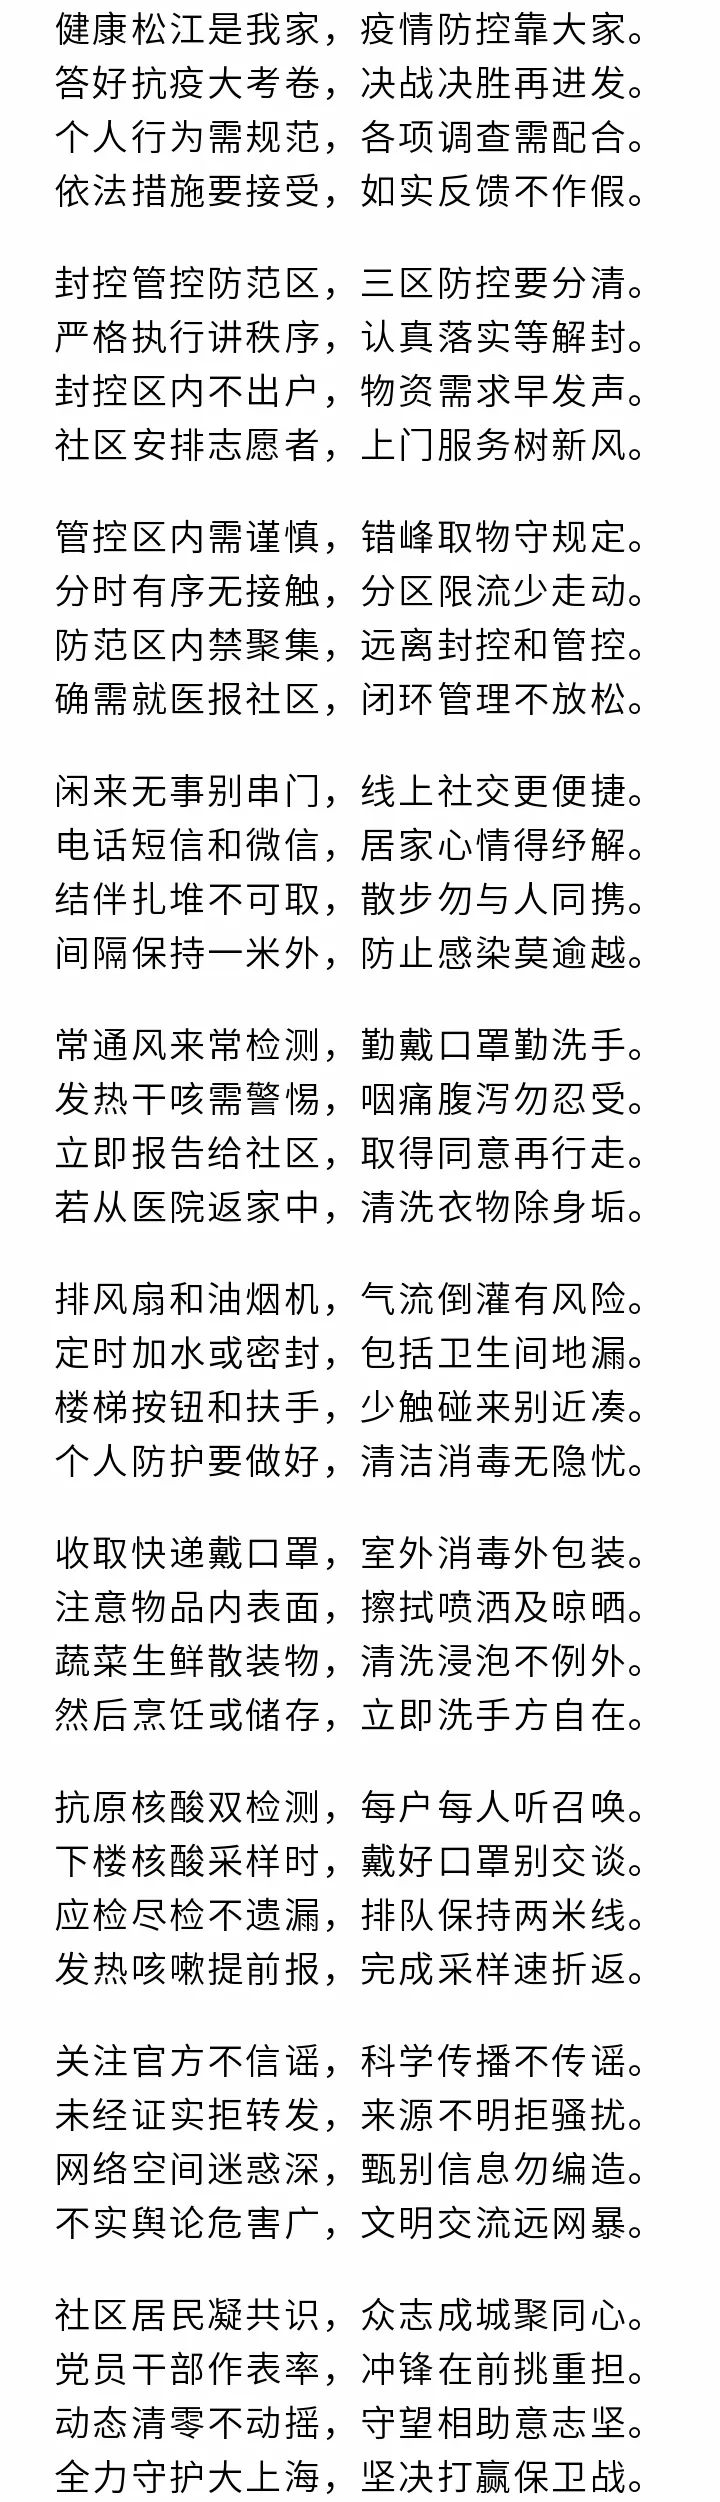 上海松江告市民书：严格配合疾控部门调查，落实三区防控要求